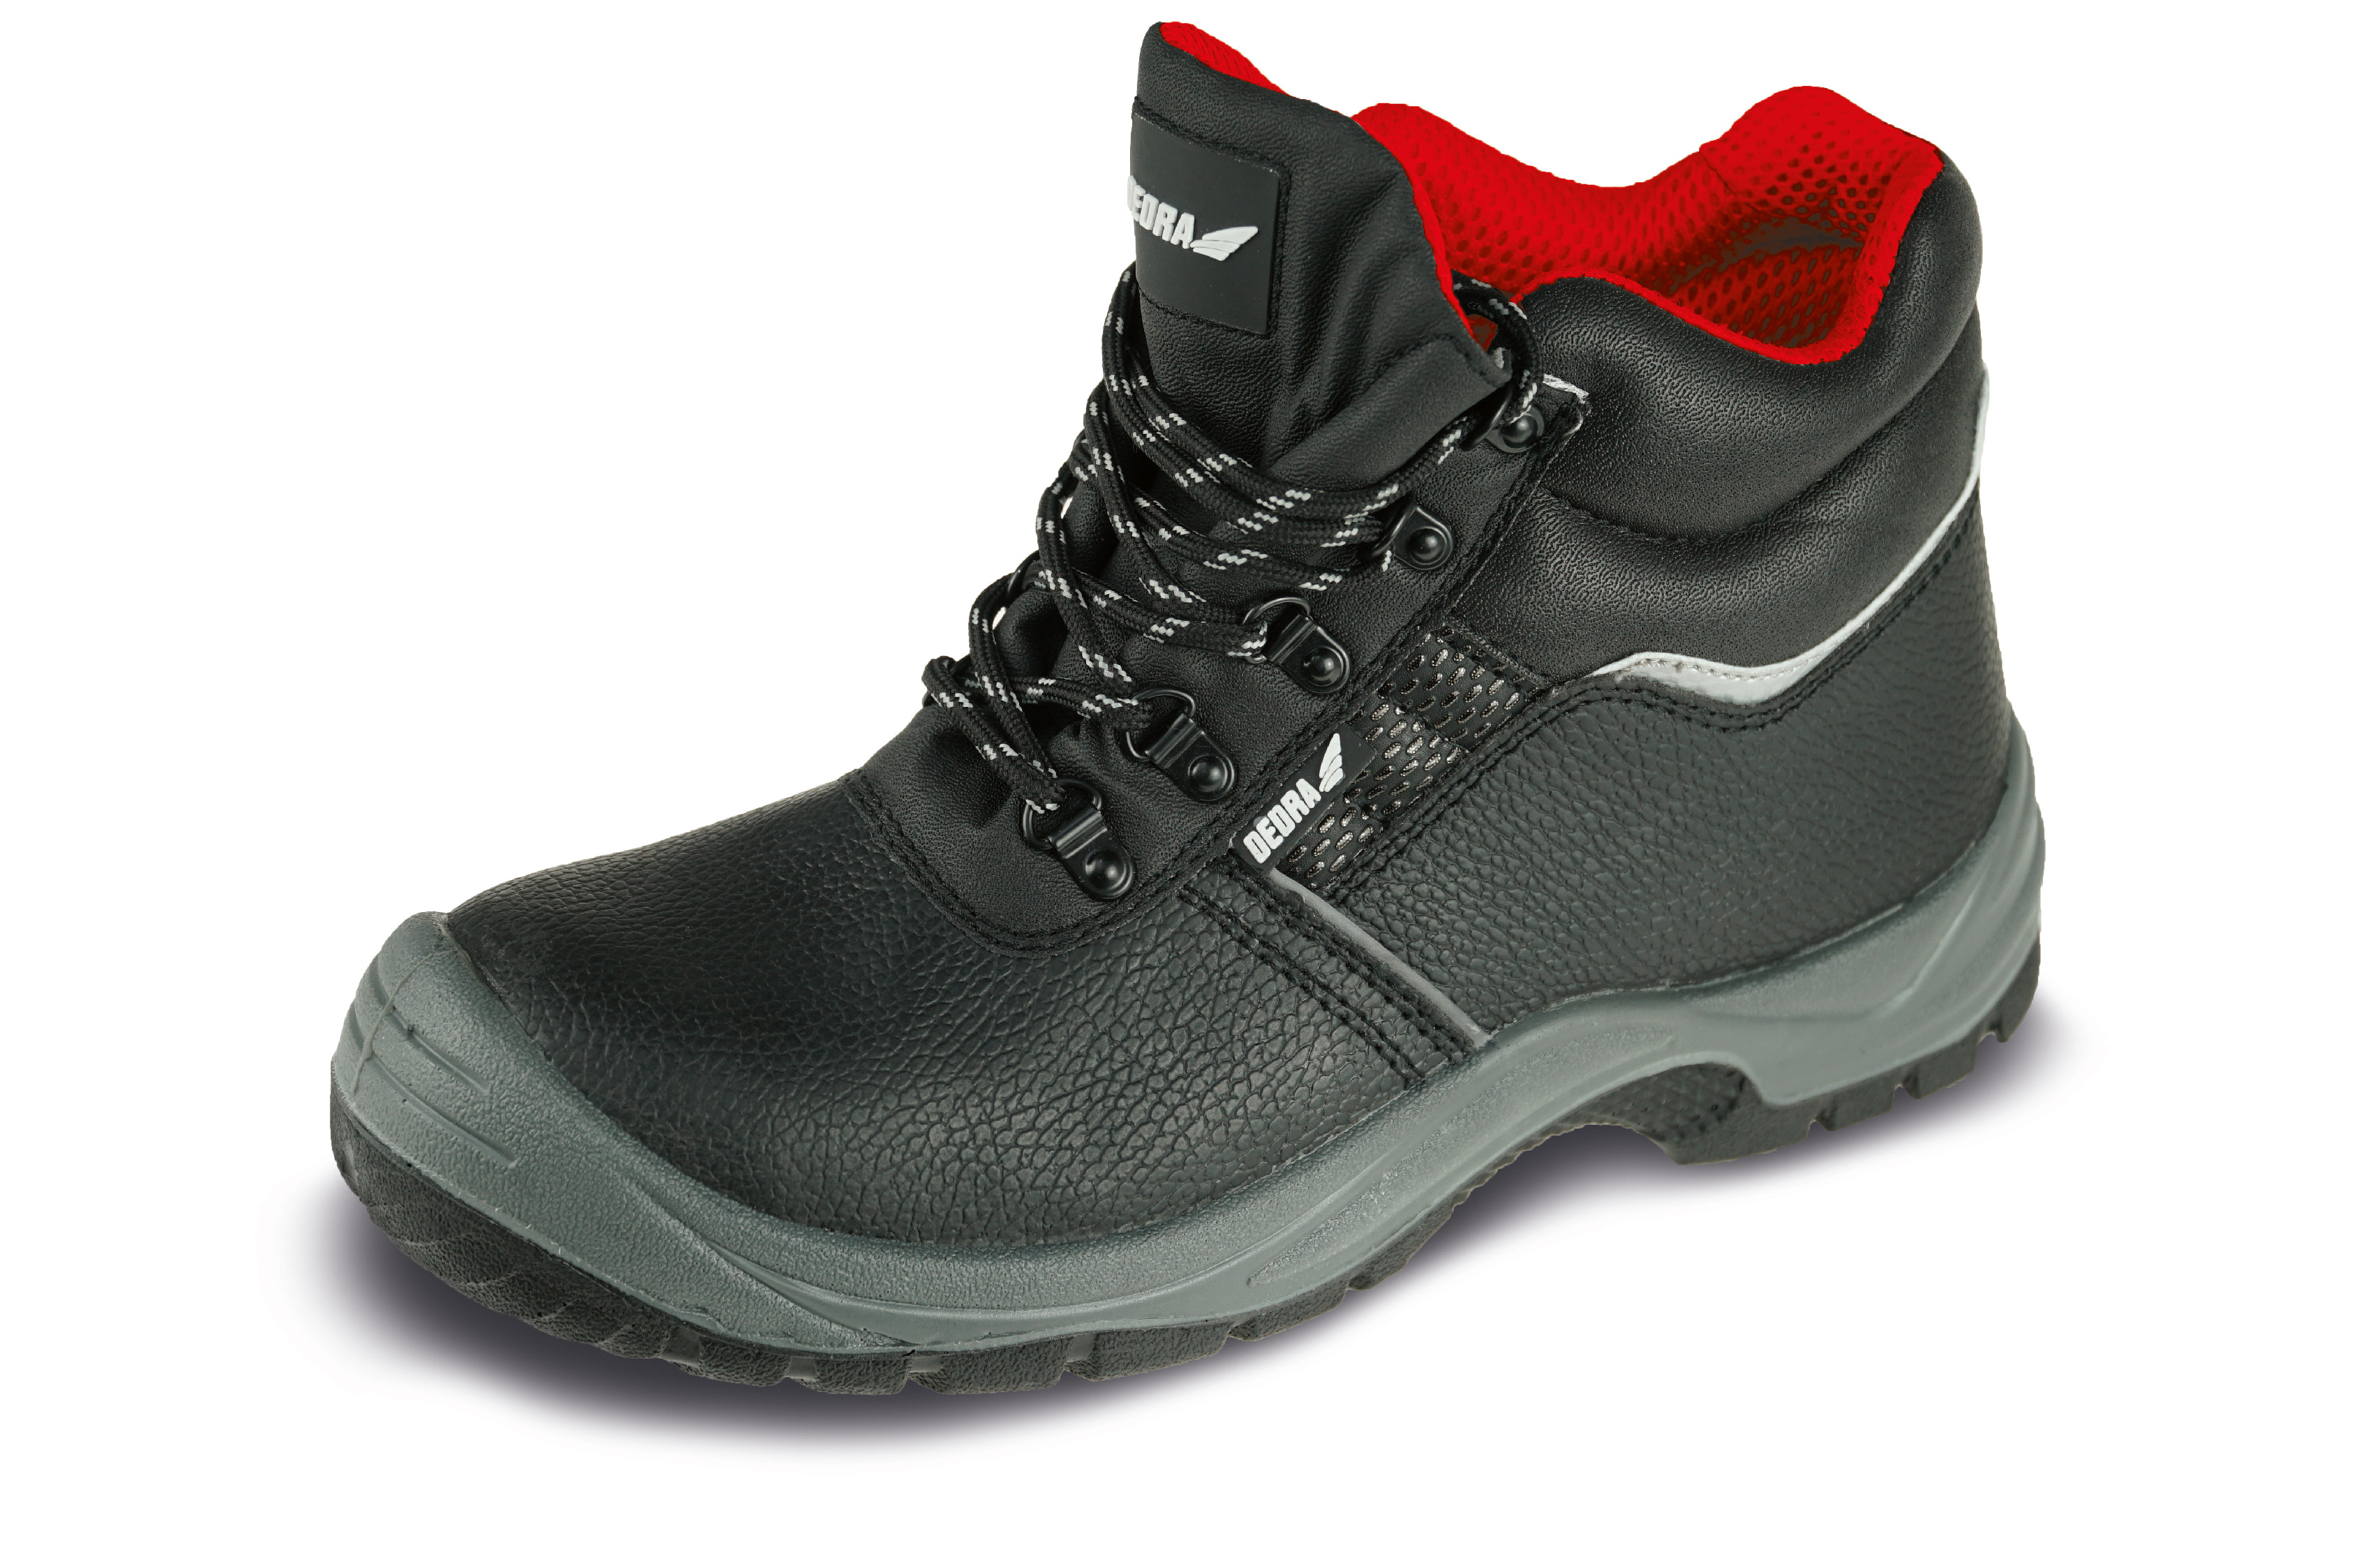 Bezpečnostní boty T1AW, kožené, velikost: 41, kat. S3 SRC DEDRA BH9T1AW-41 + Dárek, servis bez starostí v hodnotě 300Kč